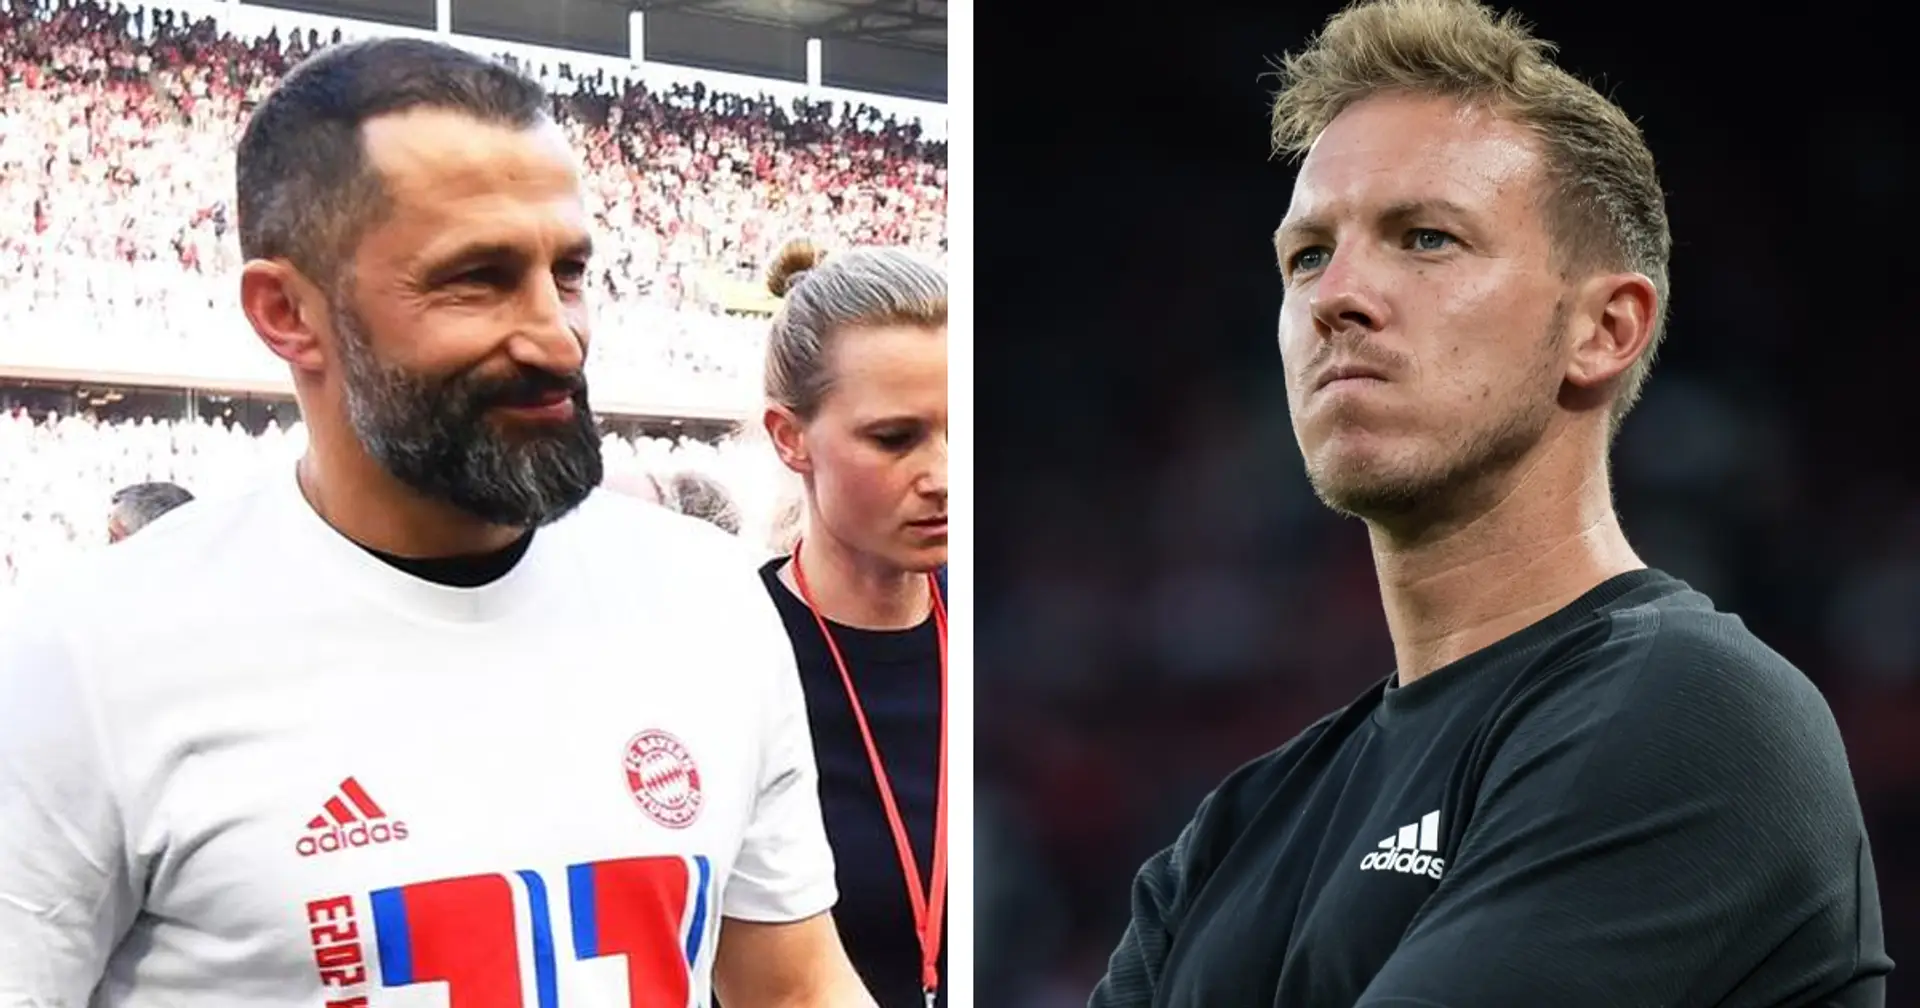 Salihamidzic lädt Julian Nagelsmann zur Meisterfeier des FC Bayern: "Dieser Titel gehört auch ihm"